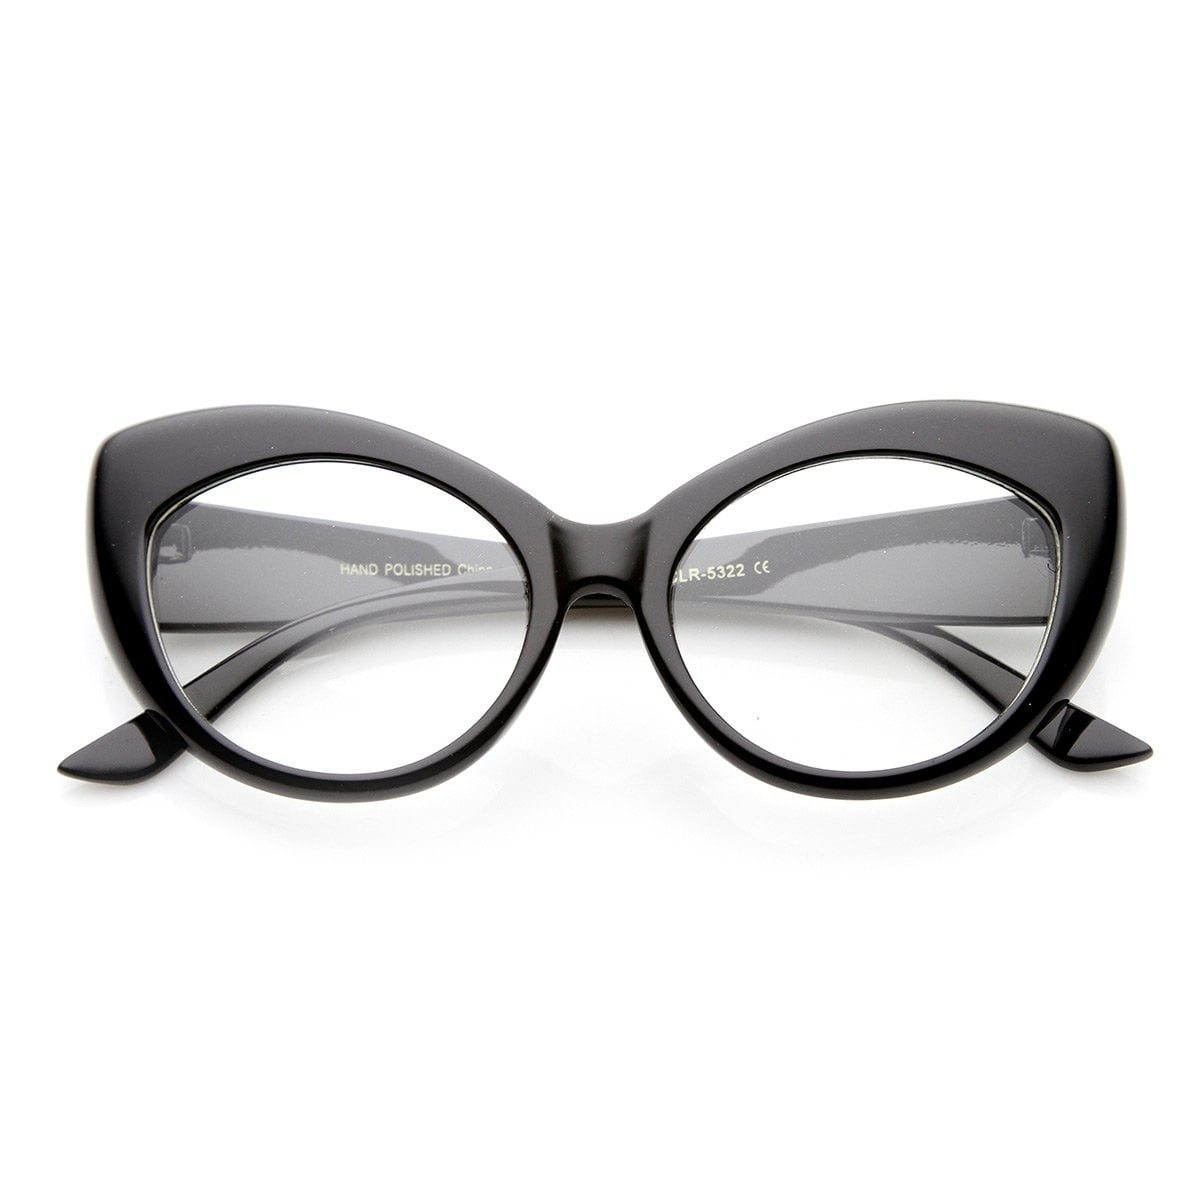 Feisedy Oversized Cat Eye Glasses Frame with Clear Lenses Eyewear for Women B2460